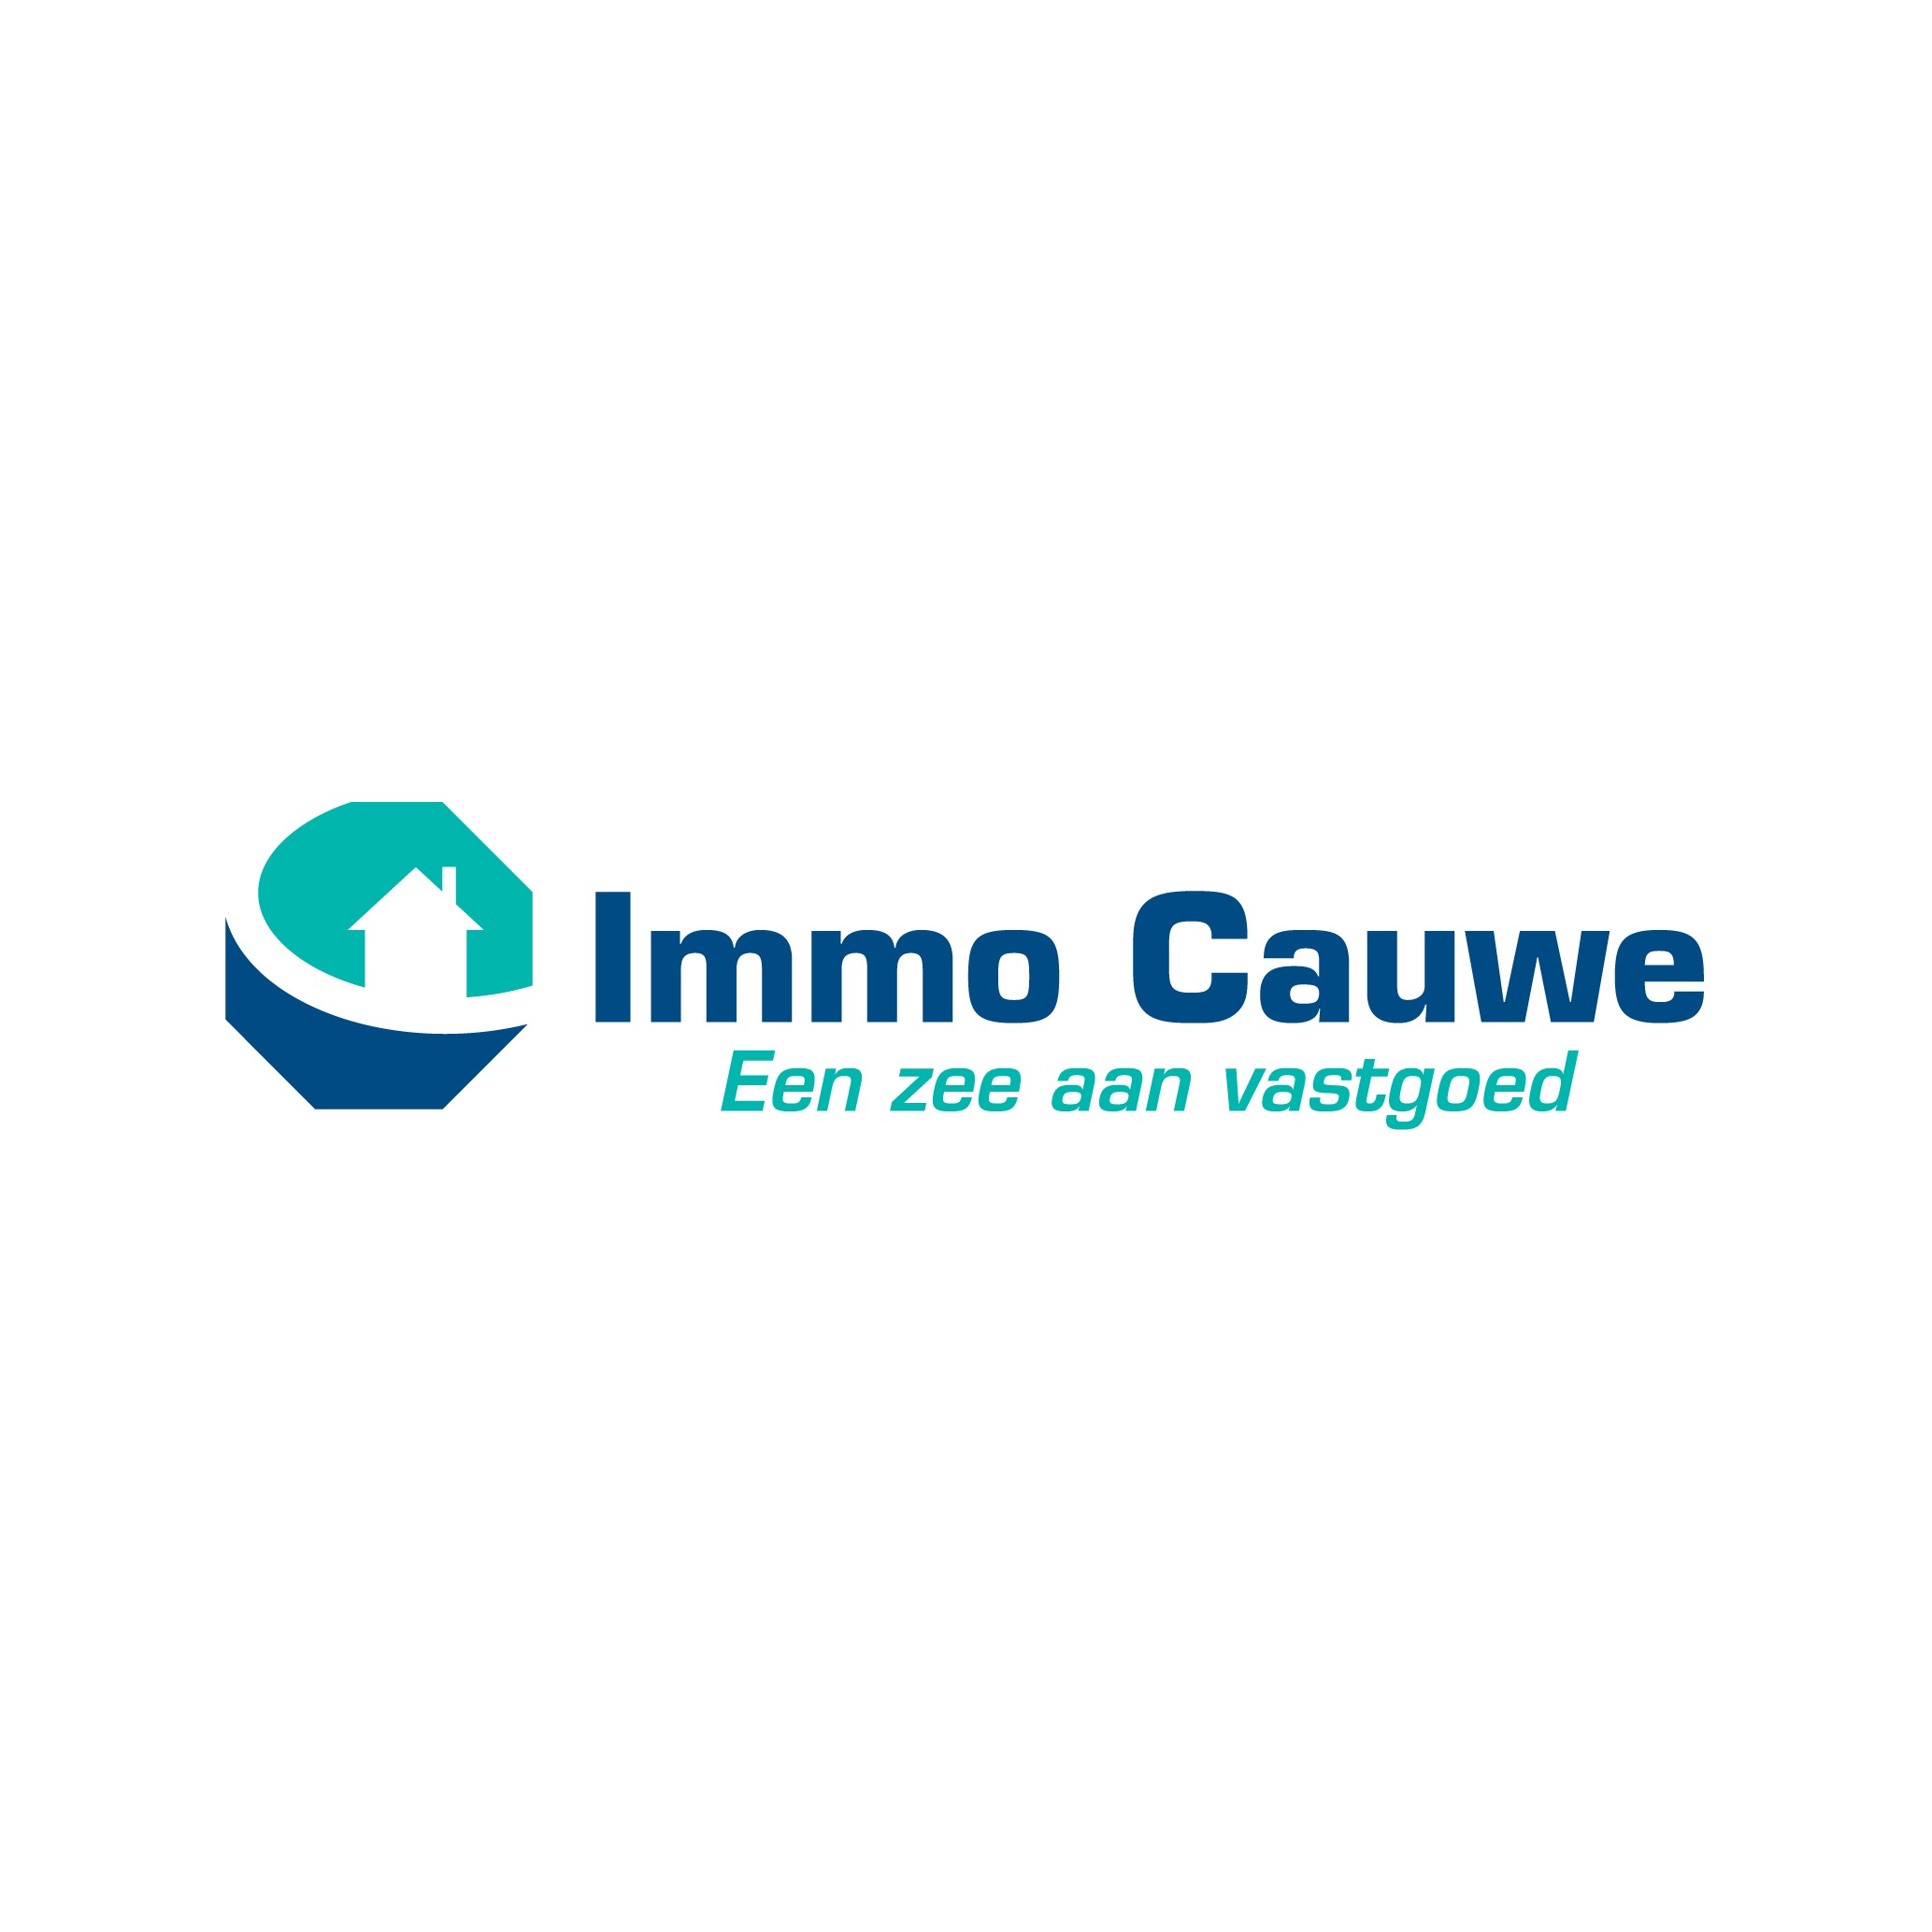 Immo Cauwe